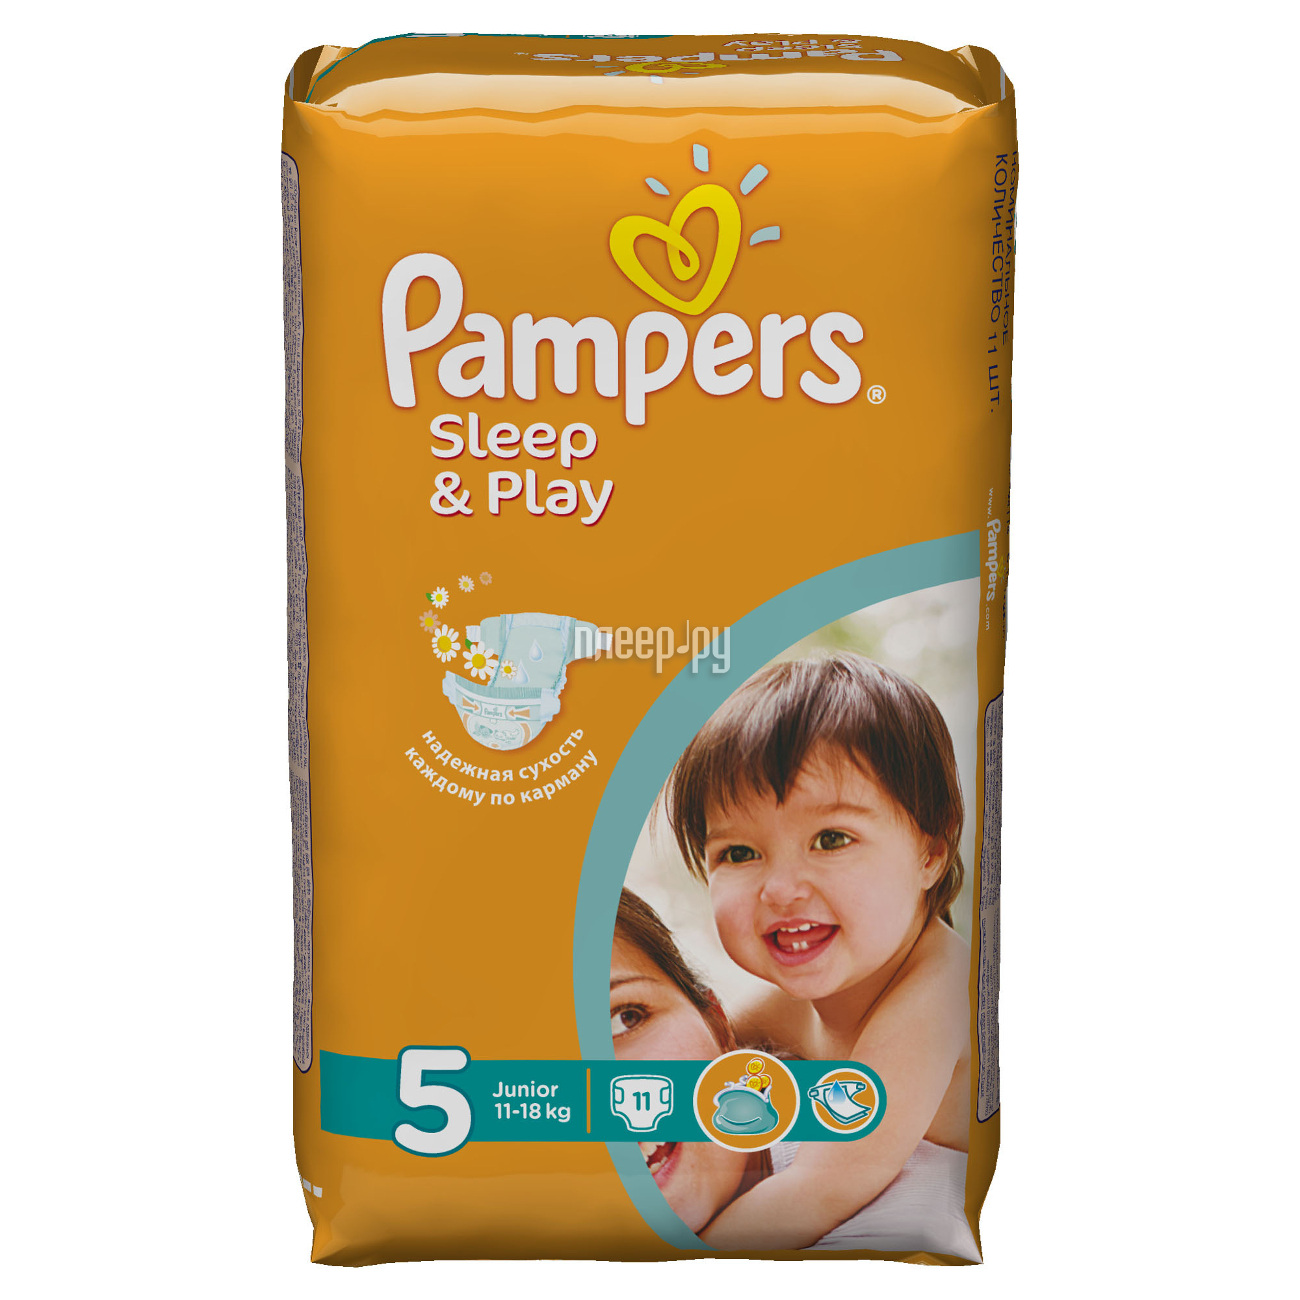  Pampers Sleep & Play Junior 11-18 11 4015400147749  161 